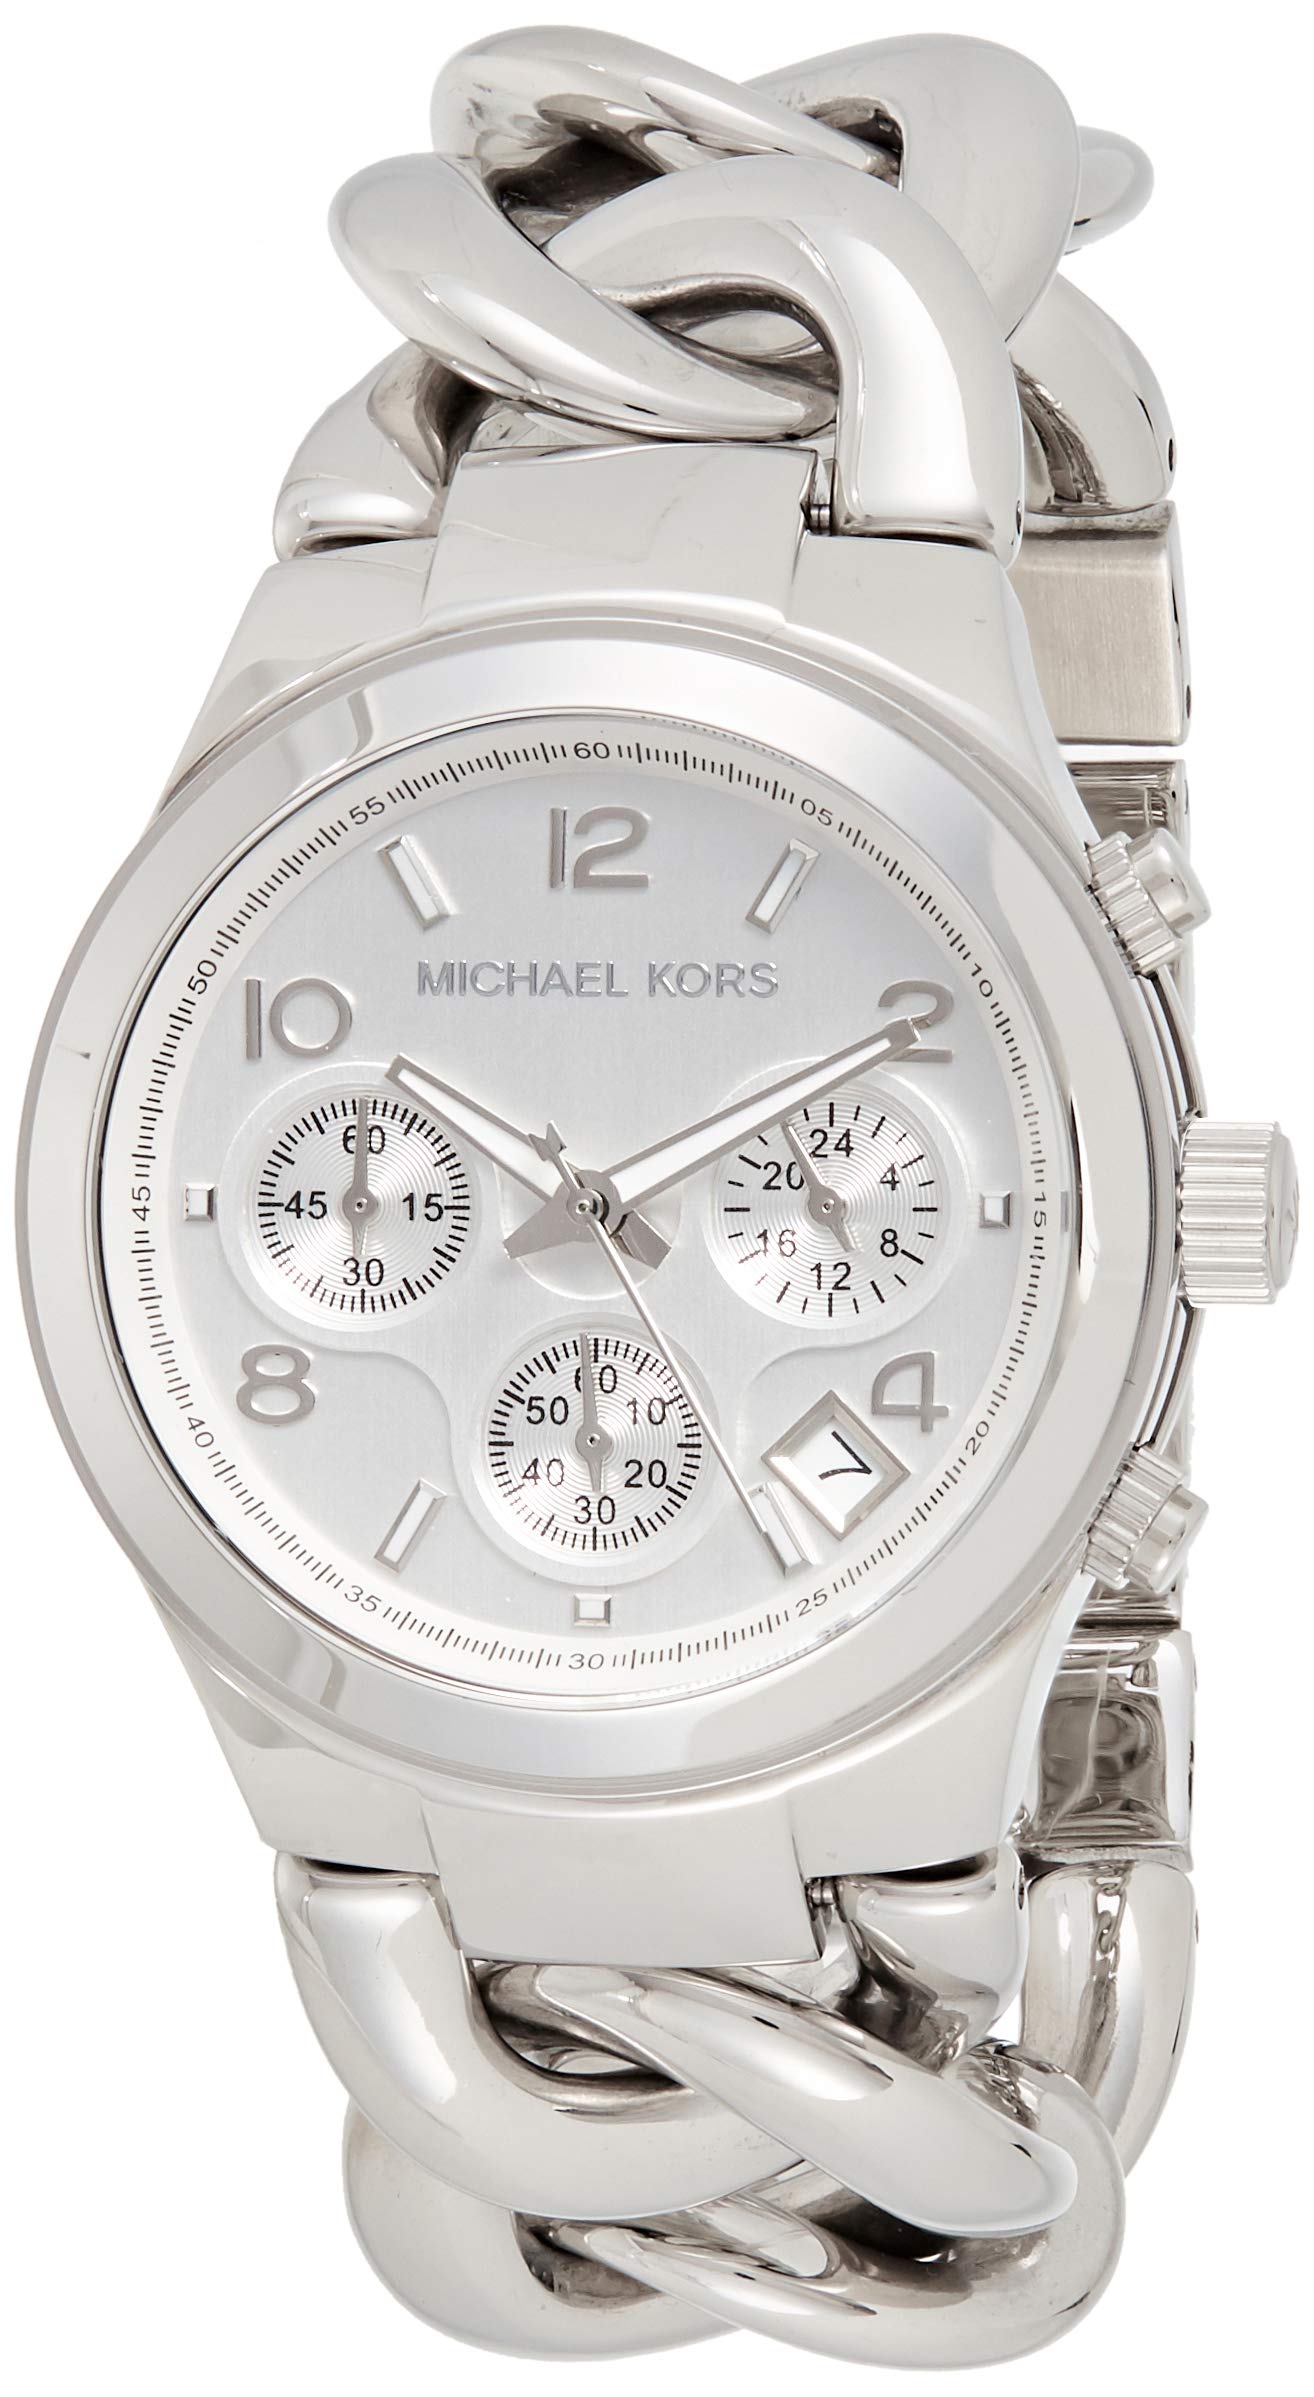 Michael Kors Ladies Stainless Steel Bracelet Watch